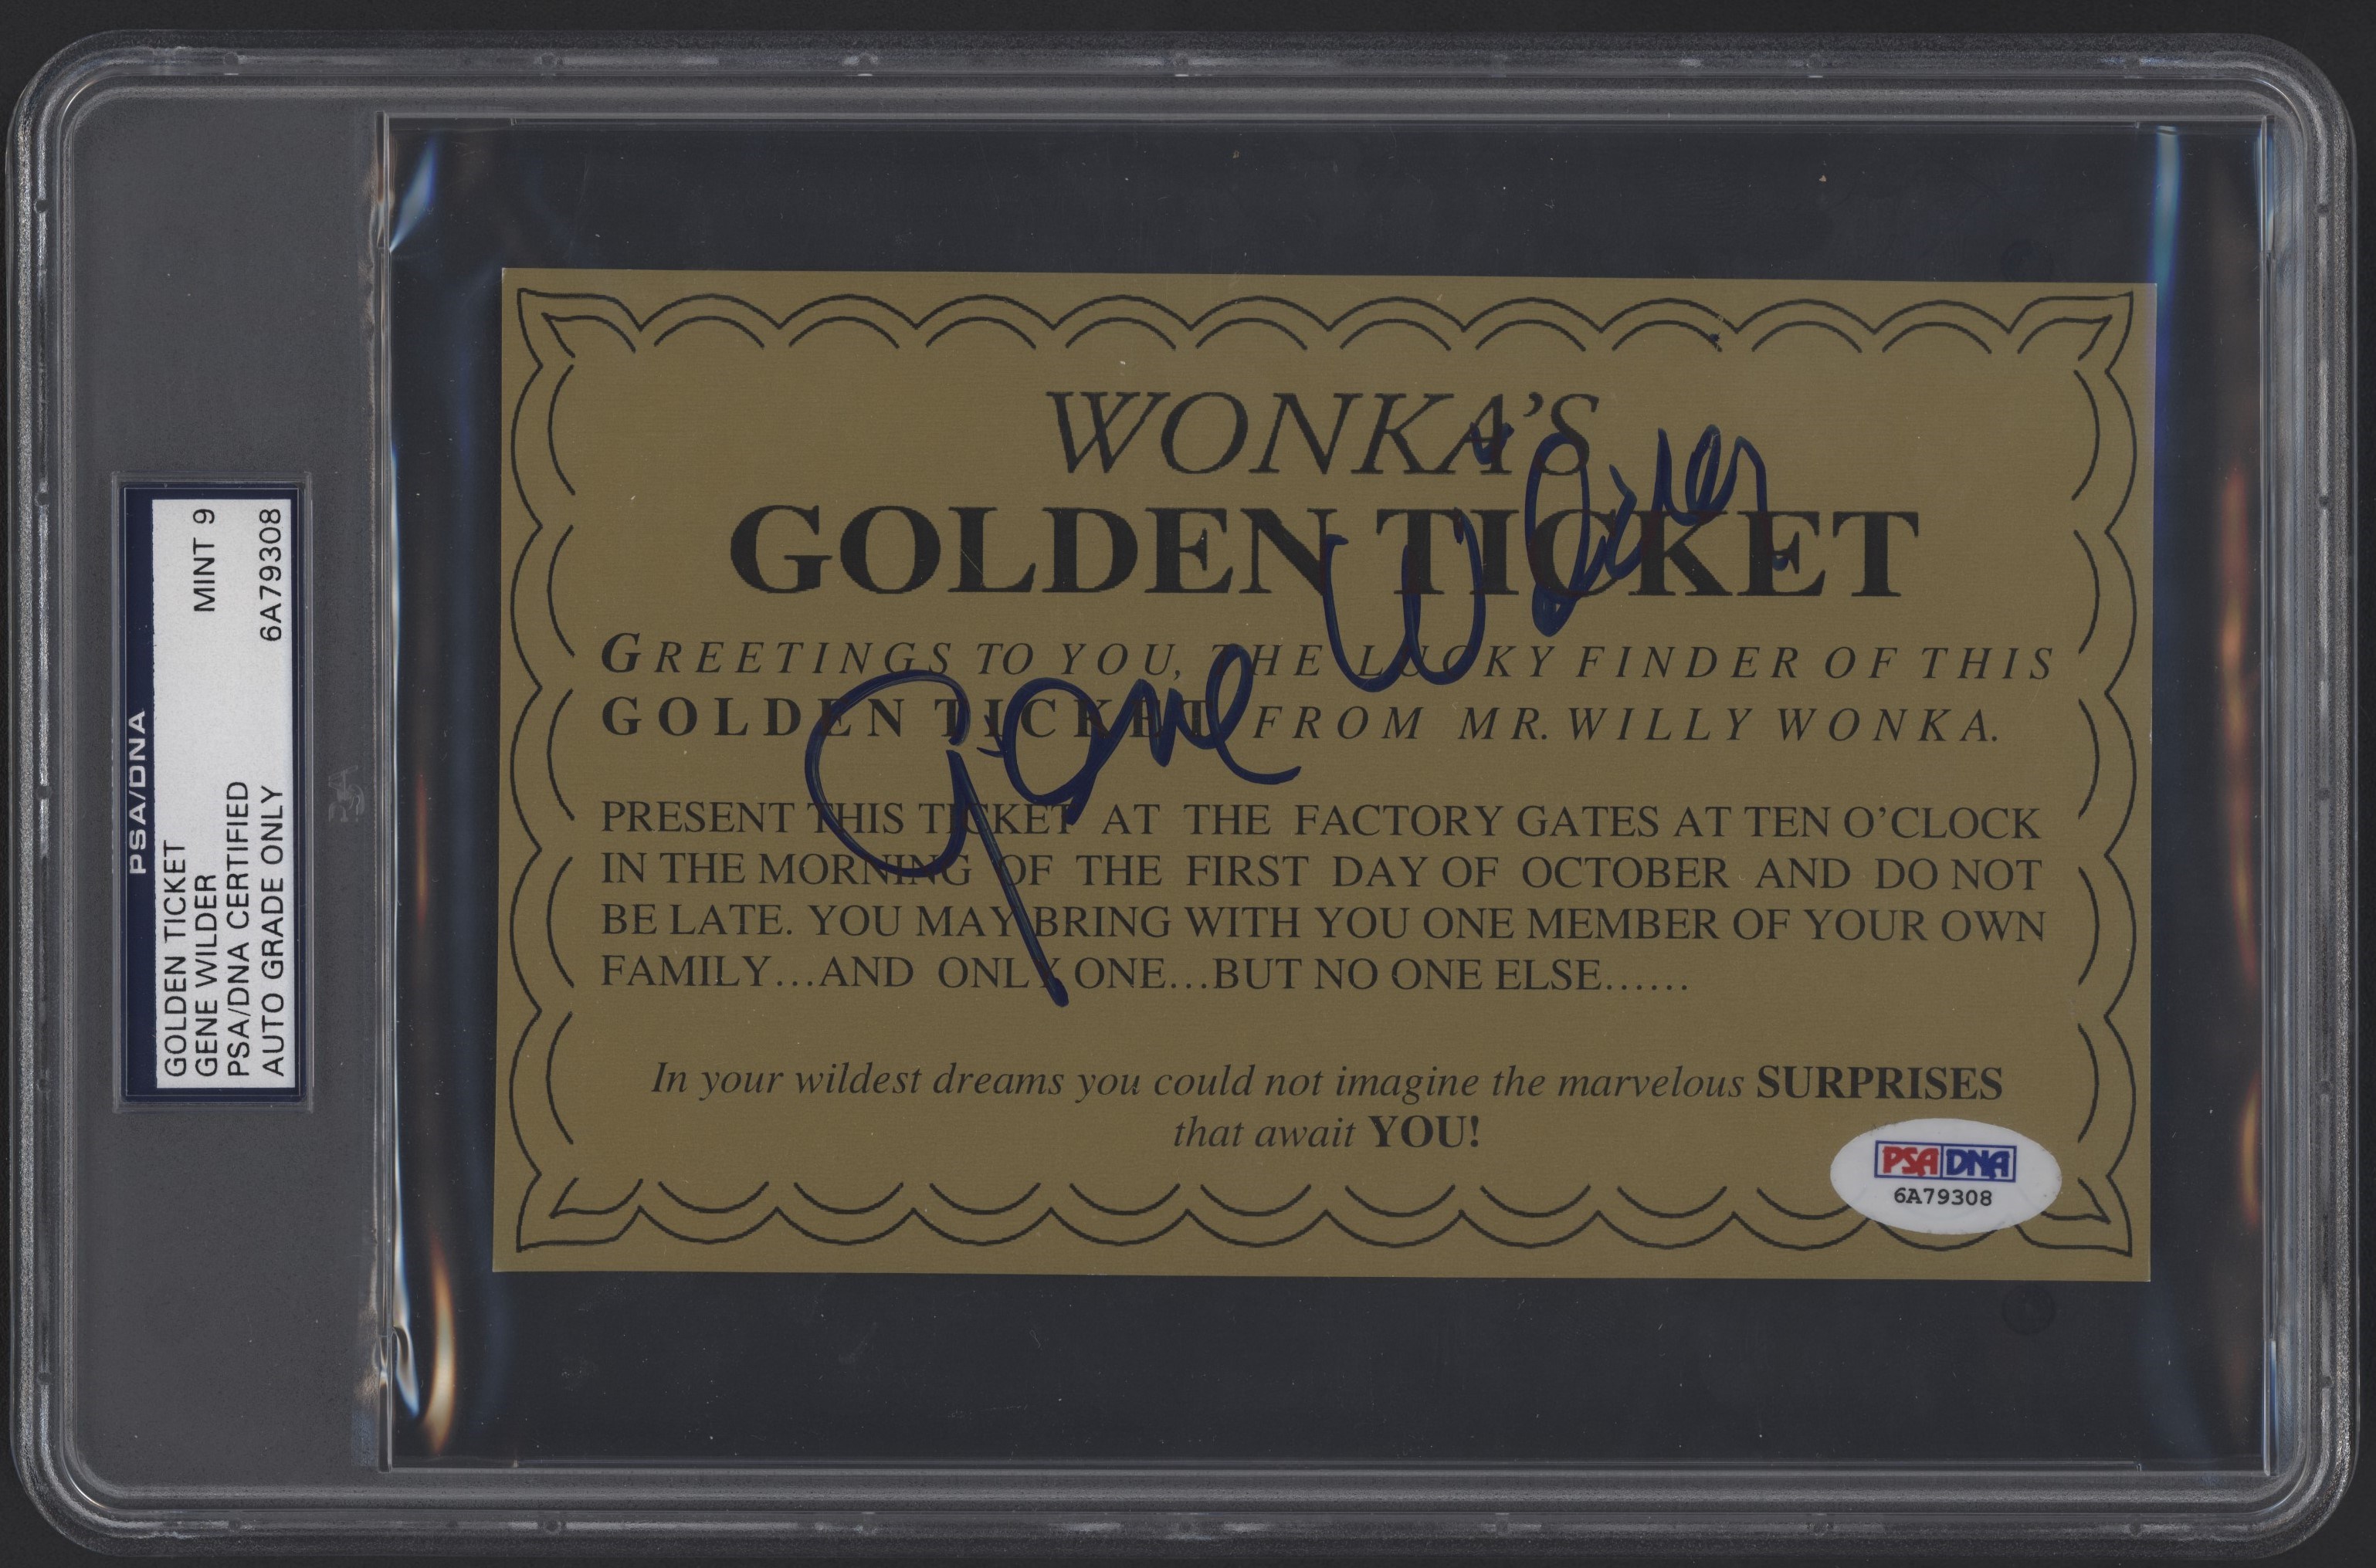 - Willy Wonka "Golden Ticket" Signed by Gene Wilder - PSA/DNA MINT 9